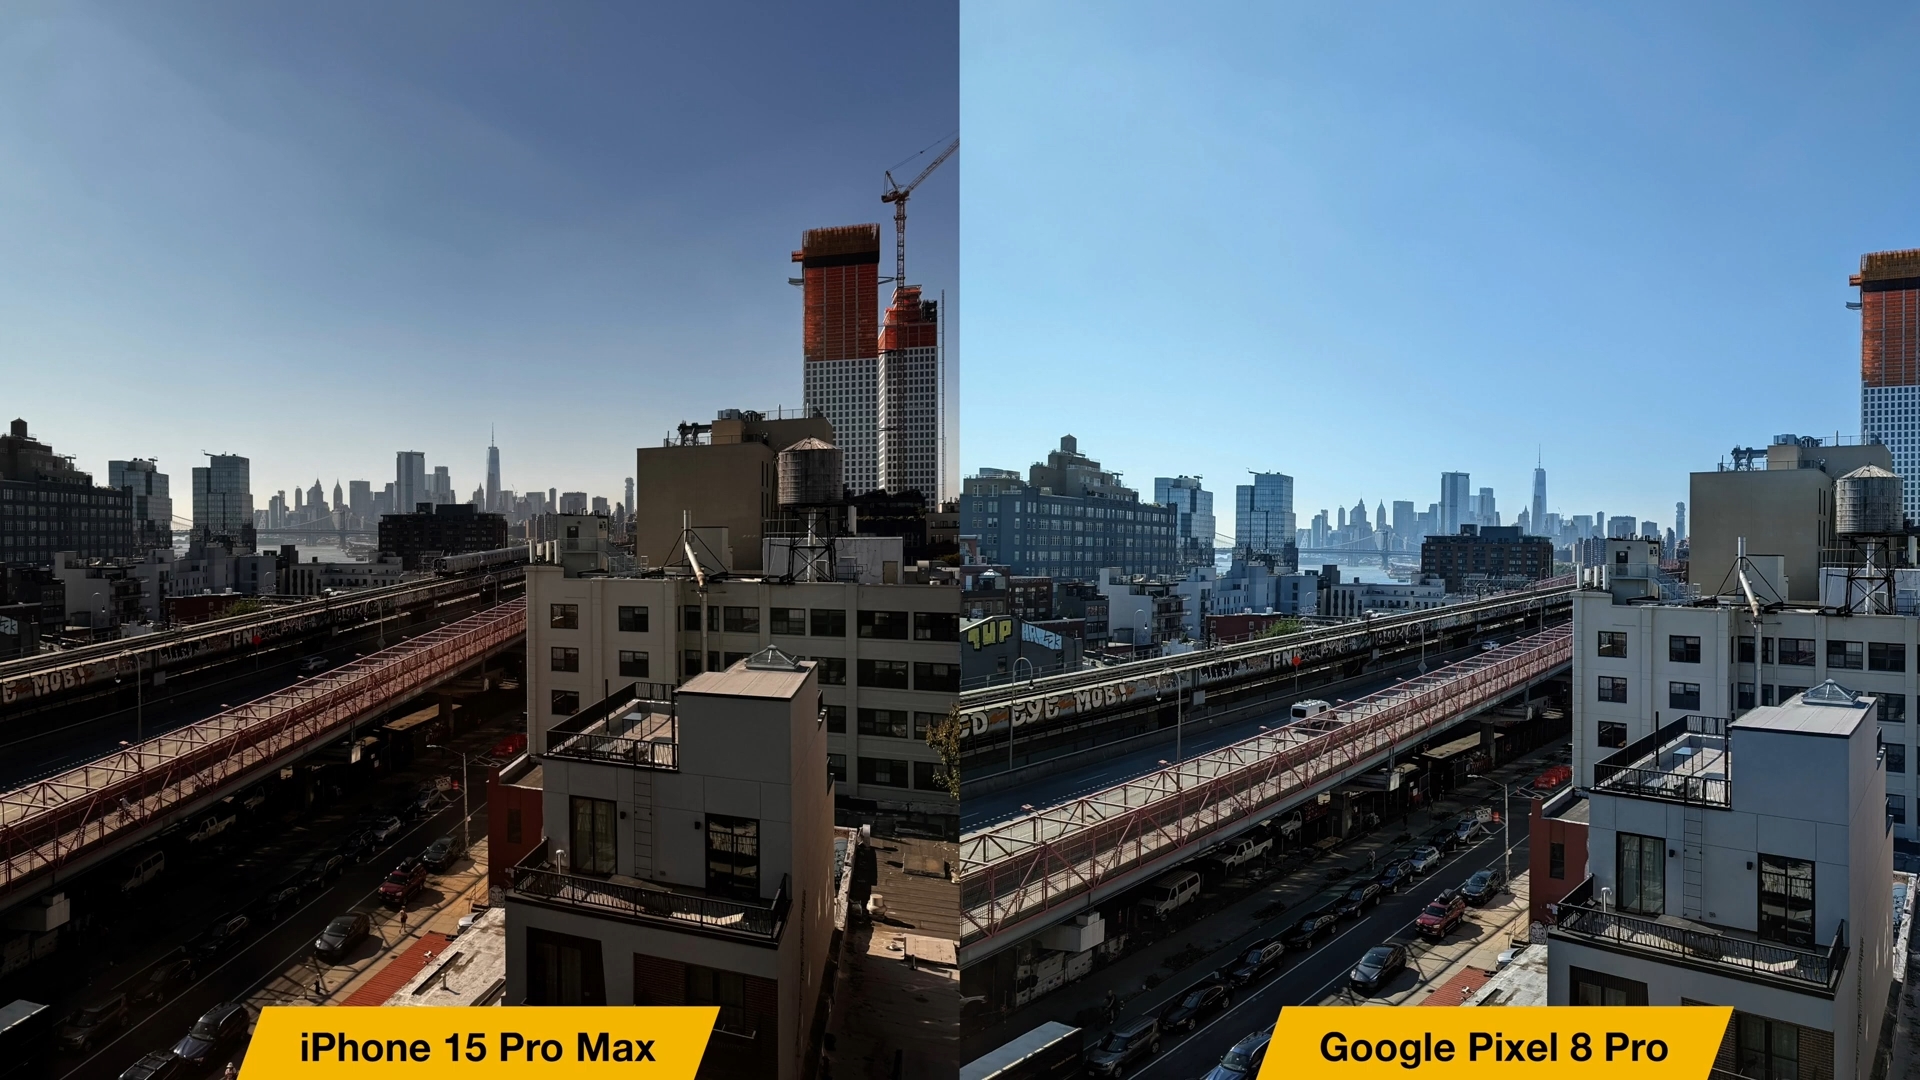 iPhoneIslam.com'dan, Google Pixel XL Pro ve iPhone 15 Pro Max'in kameraları arasındaki karşılaştırma.